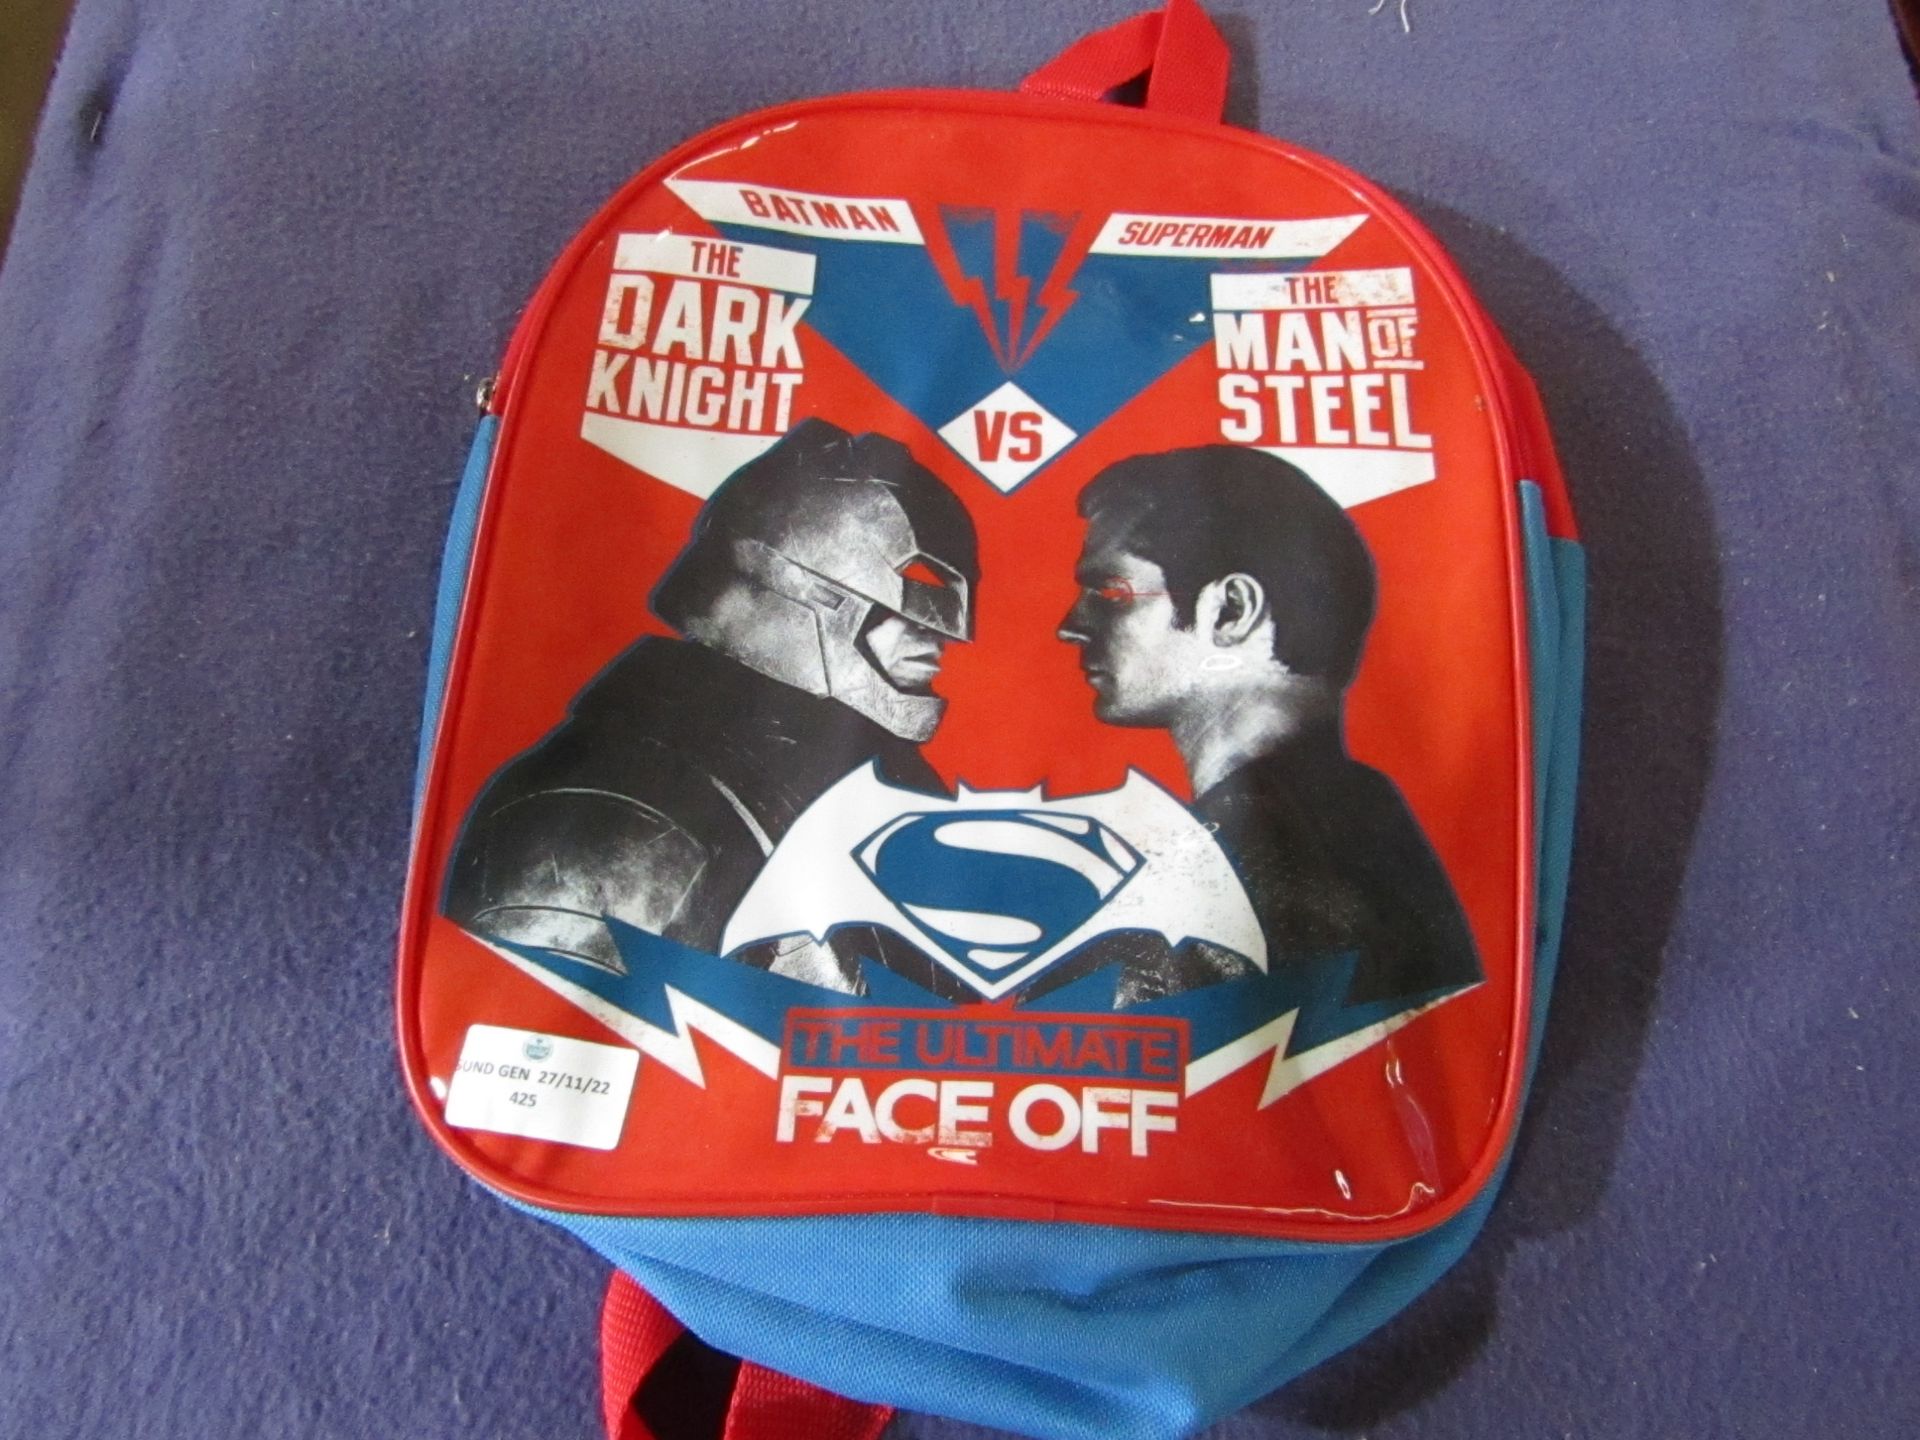 Batman The Dark Knight - Backpack - Unused, No Packaging.